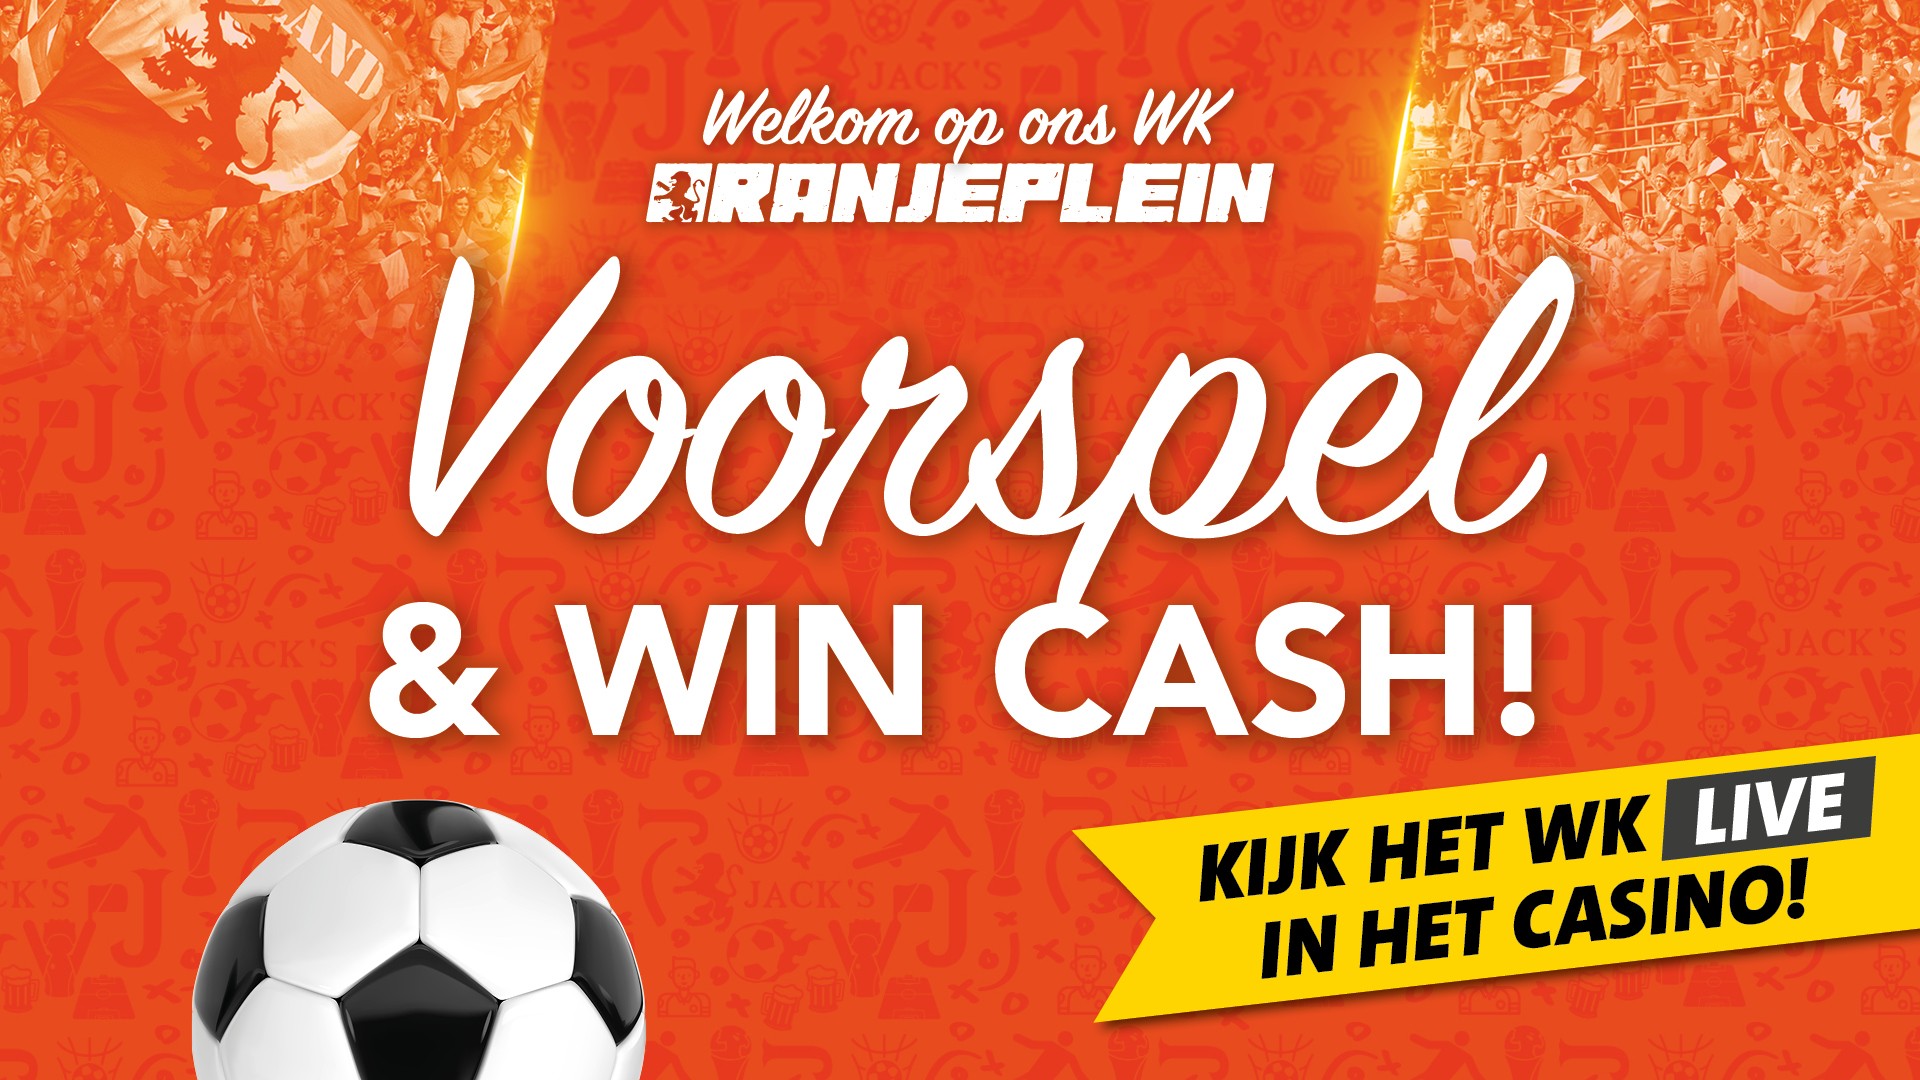 FL_Actiebanner_WK_Oranjeplein_Banners_nov22.jpg